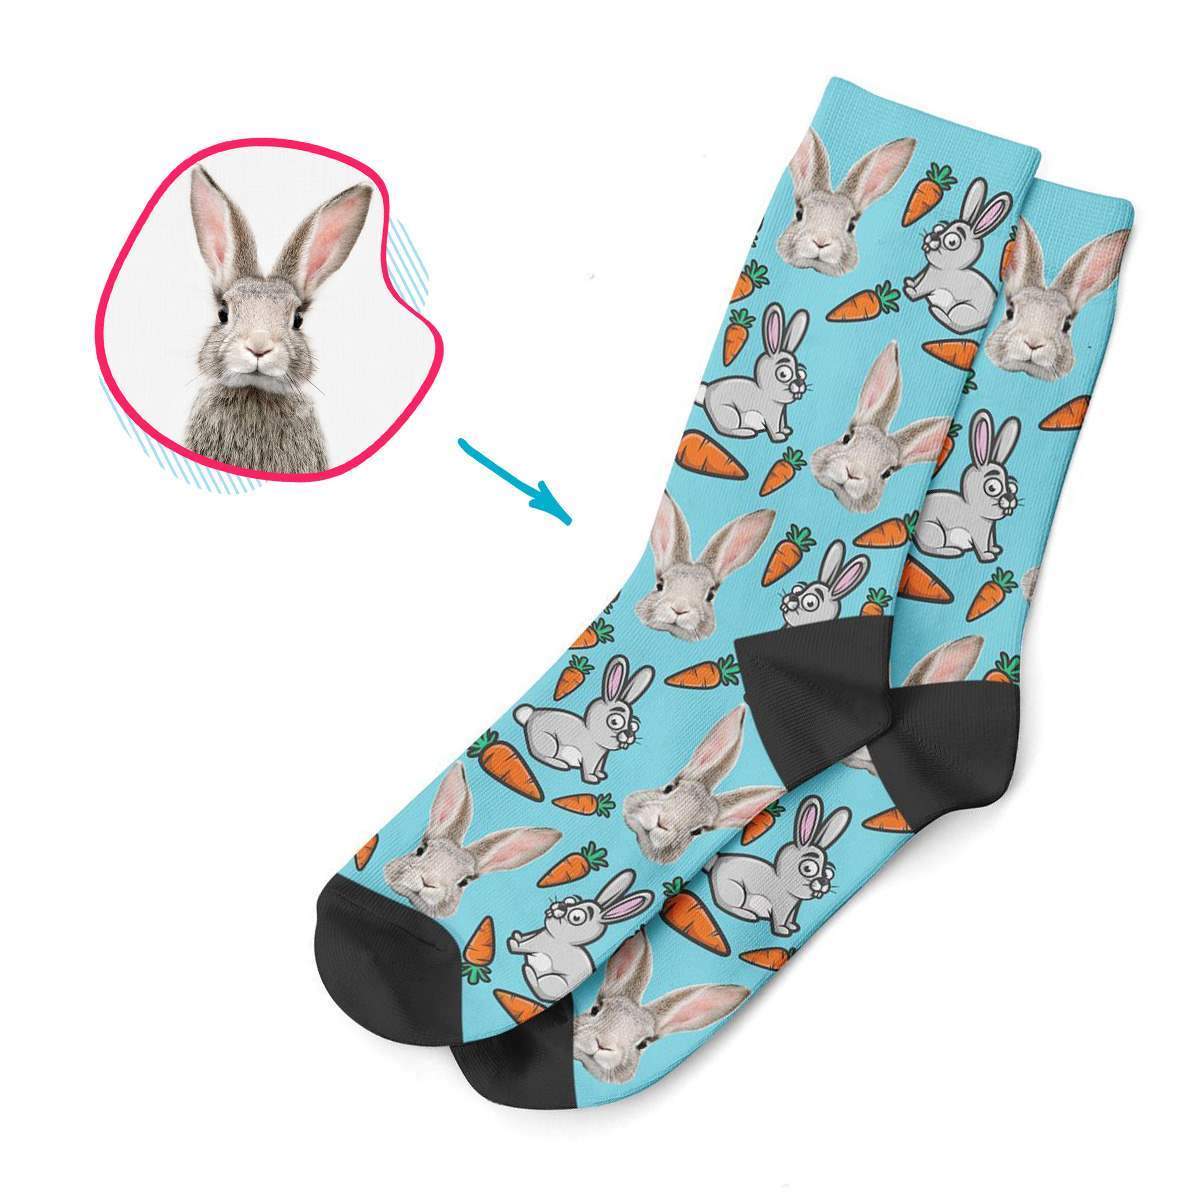 Bunny Personalized Socks